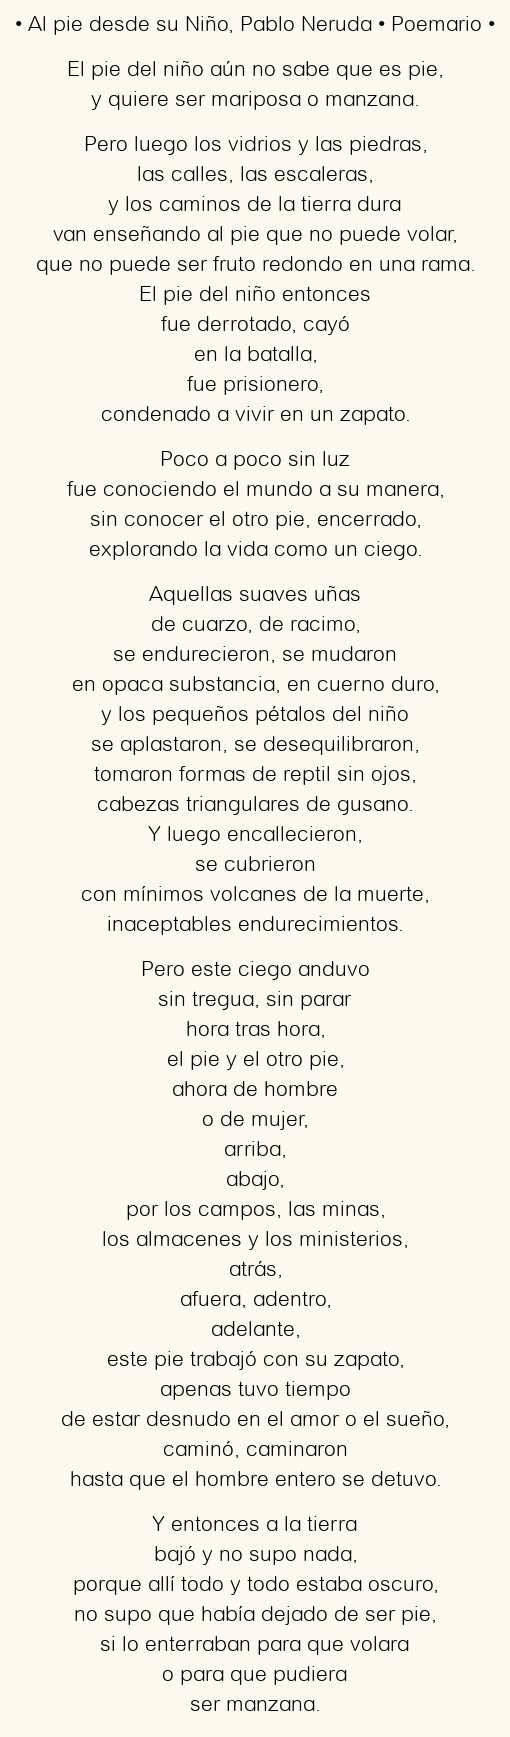 Imagen con el poema Al pie desde su Niño, por Pablo Neruda